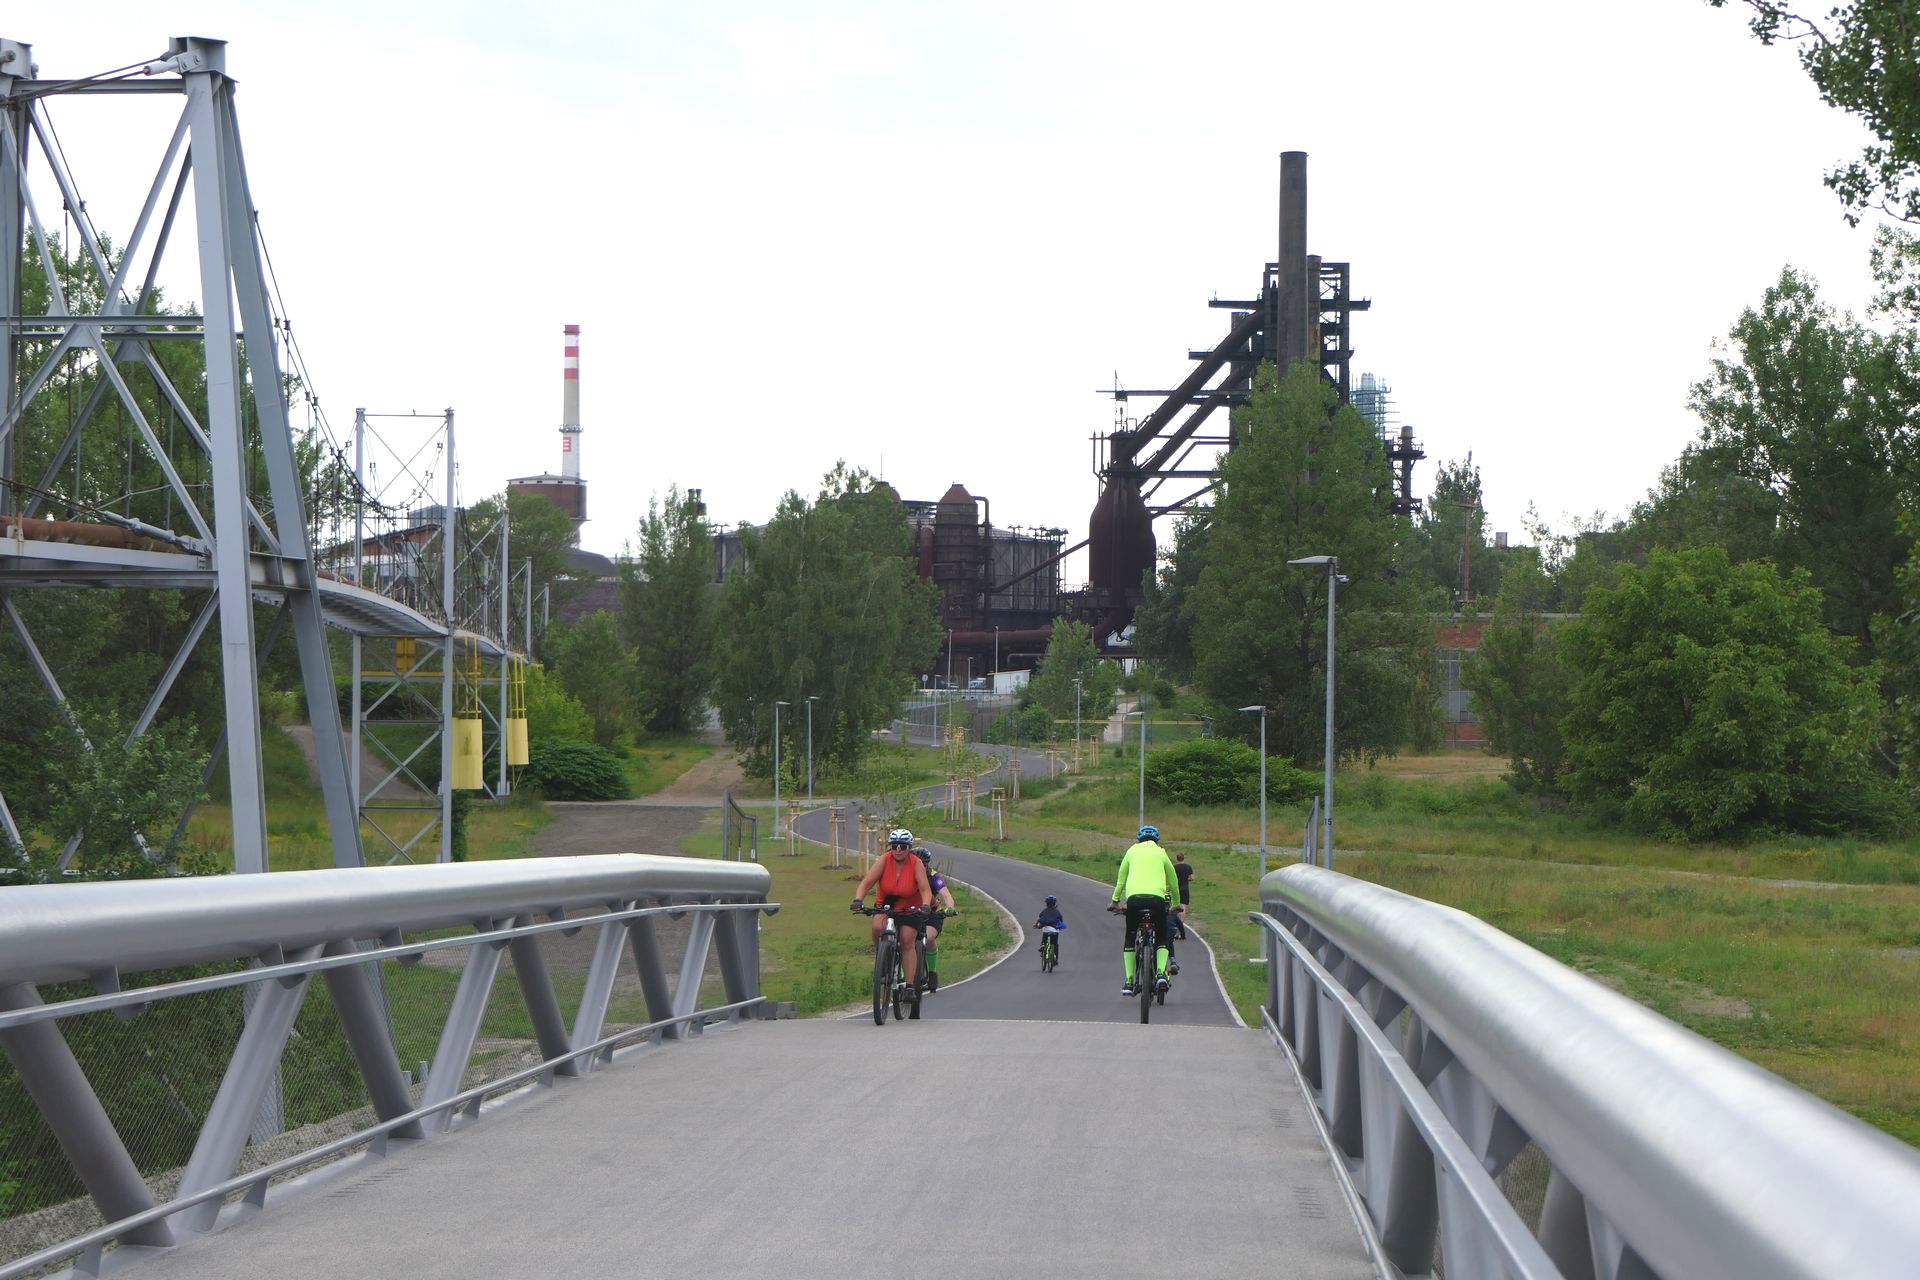 Kładka pieszo rowerowa do Vitkowic już otwarta. Od razu pojawili się więc rowerzyści, którzy dotychczas nie mieli zbyt dogodnego dojazdu do dawnej huty.